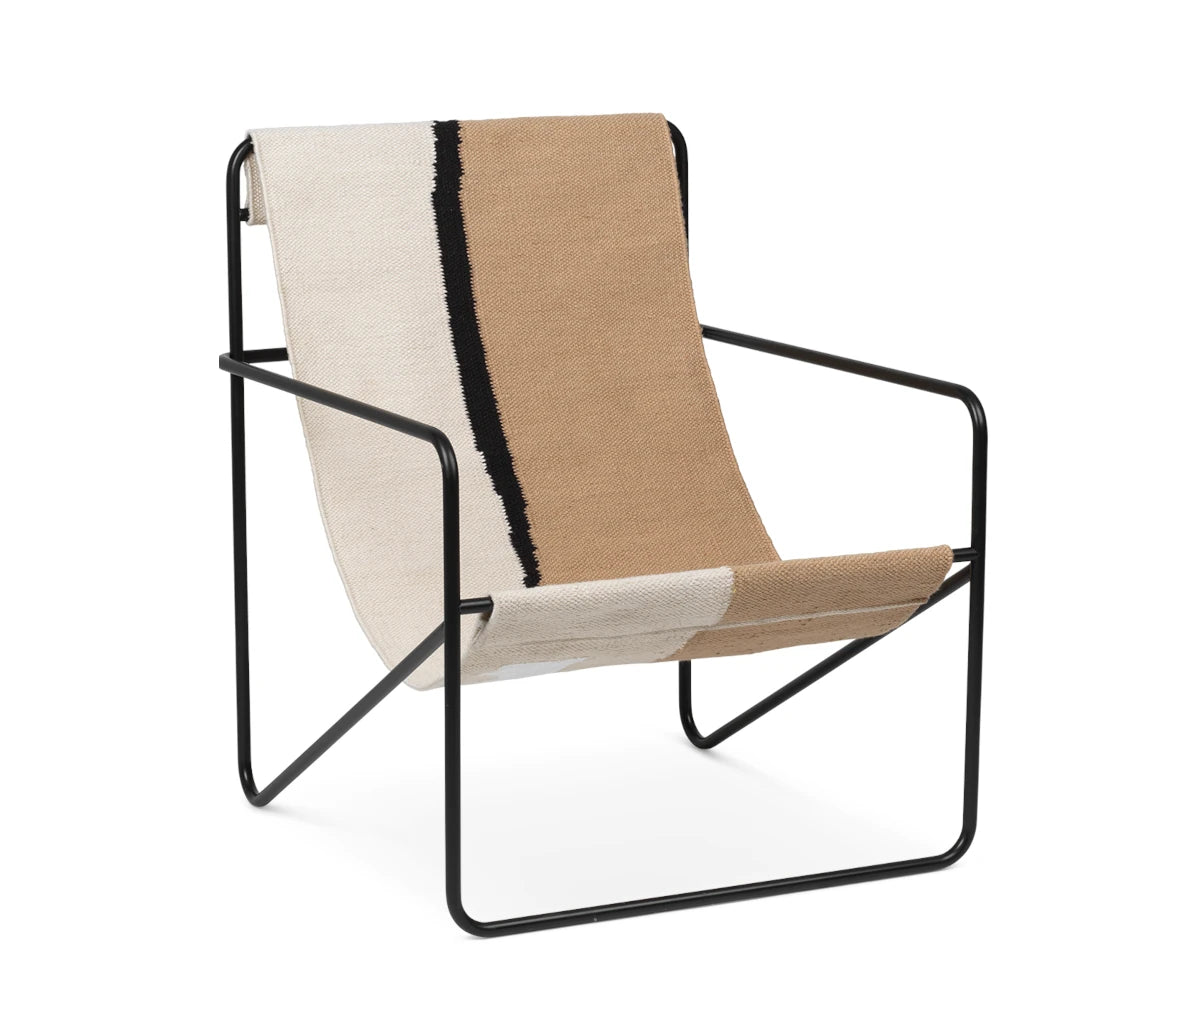 Desert Lounge Chair | Black Frame + Soil Fabric | by ferm Living - Lifestory